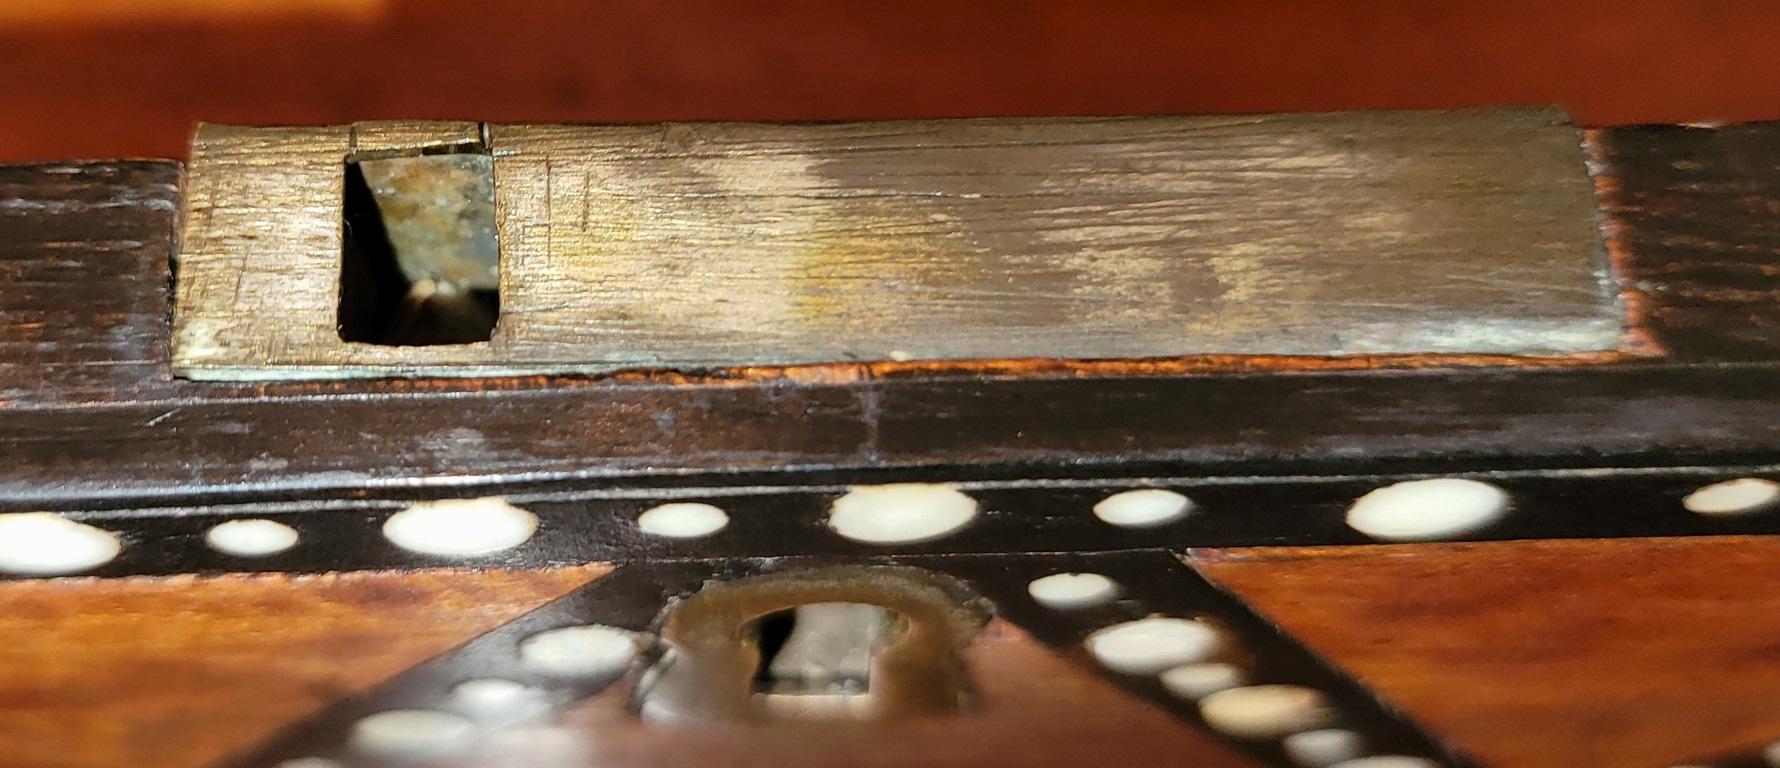 Nous vous présentons un magnifique et rare coffret à bibelots en bois d'Anglo Ceylan du 19e siècle.

Fabriqué à 